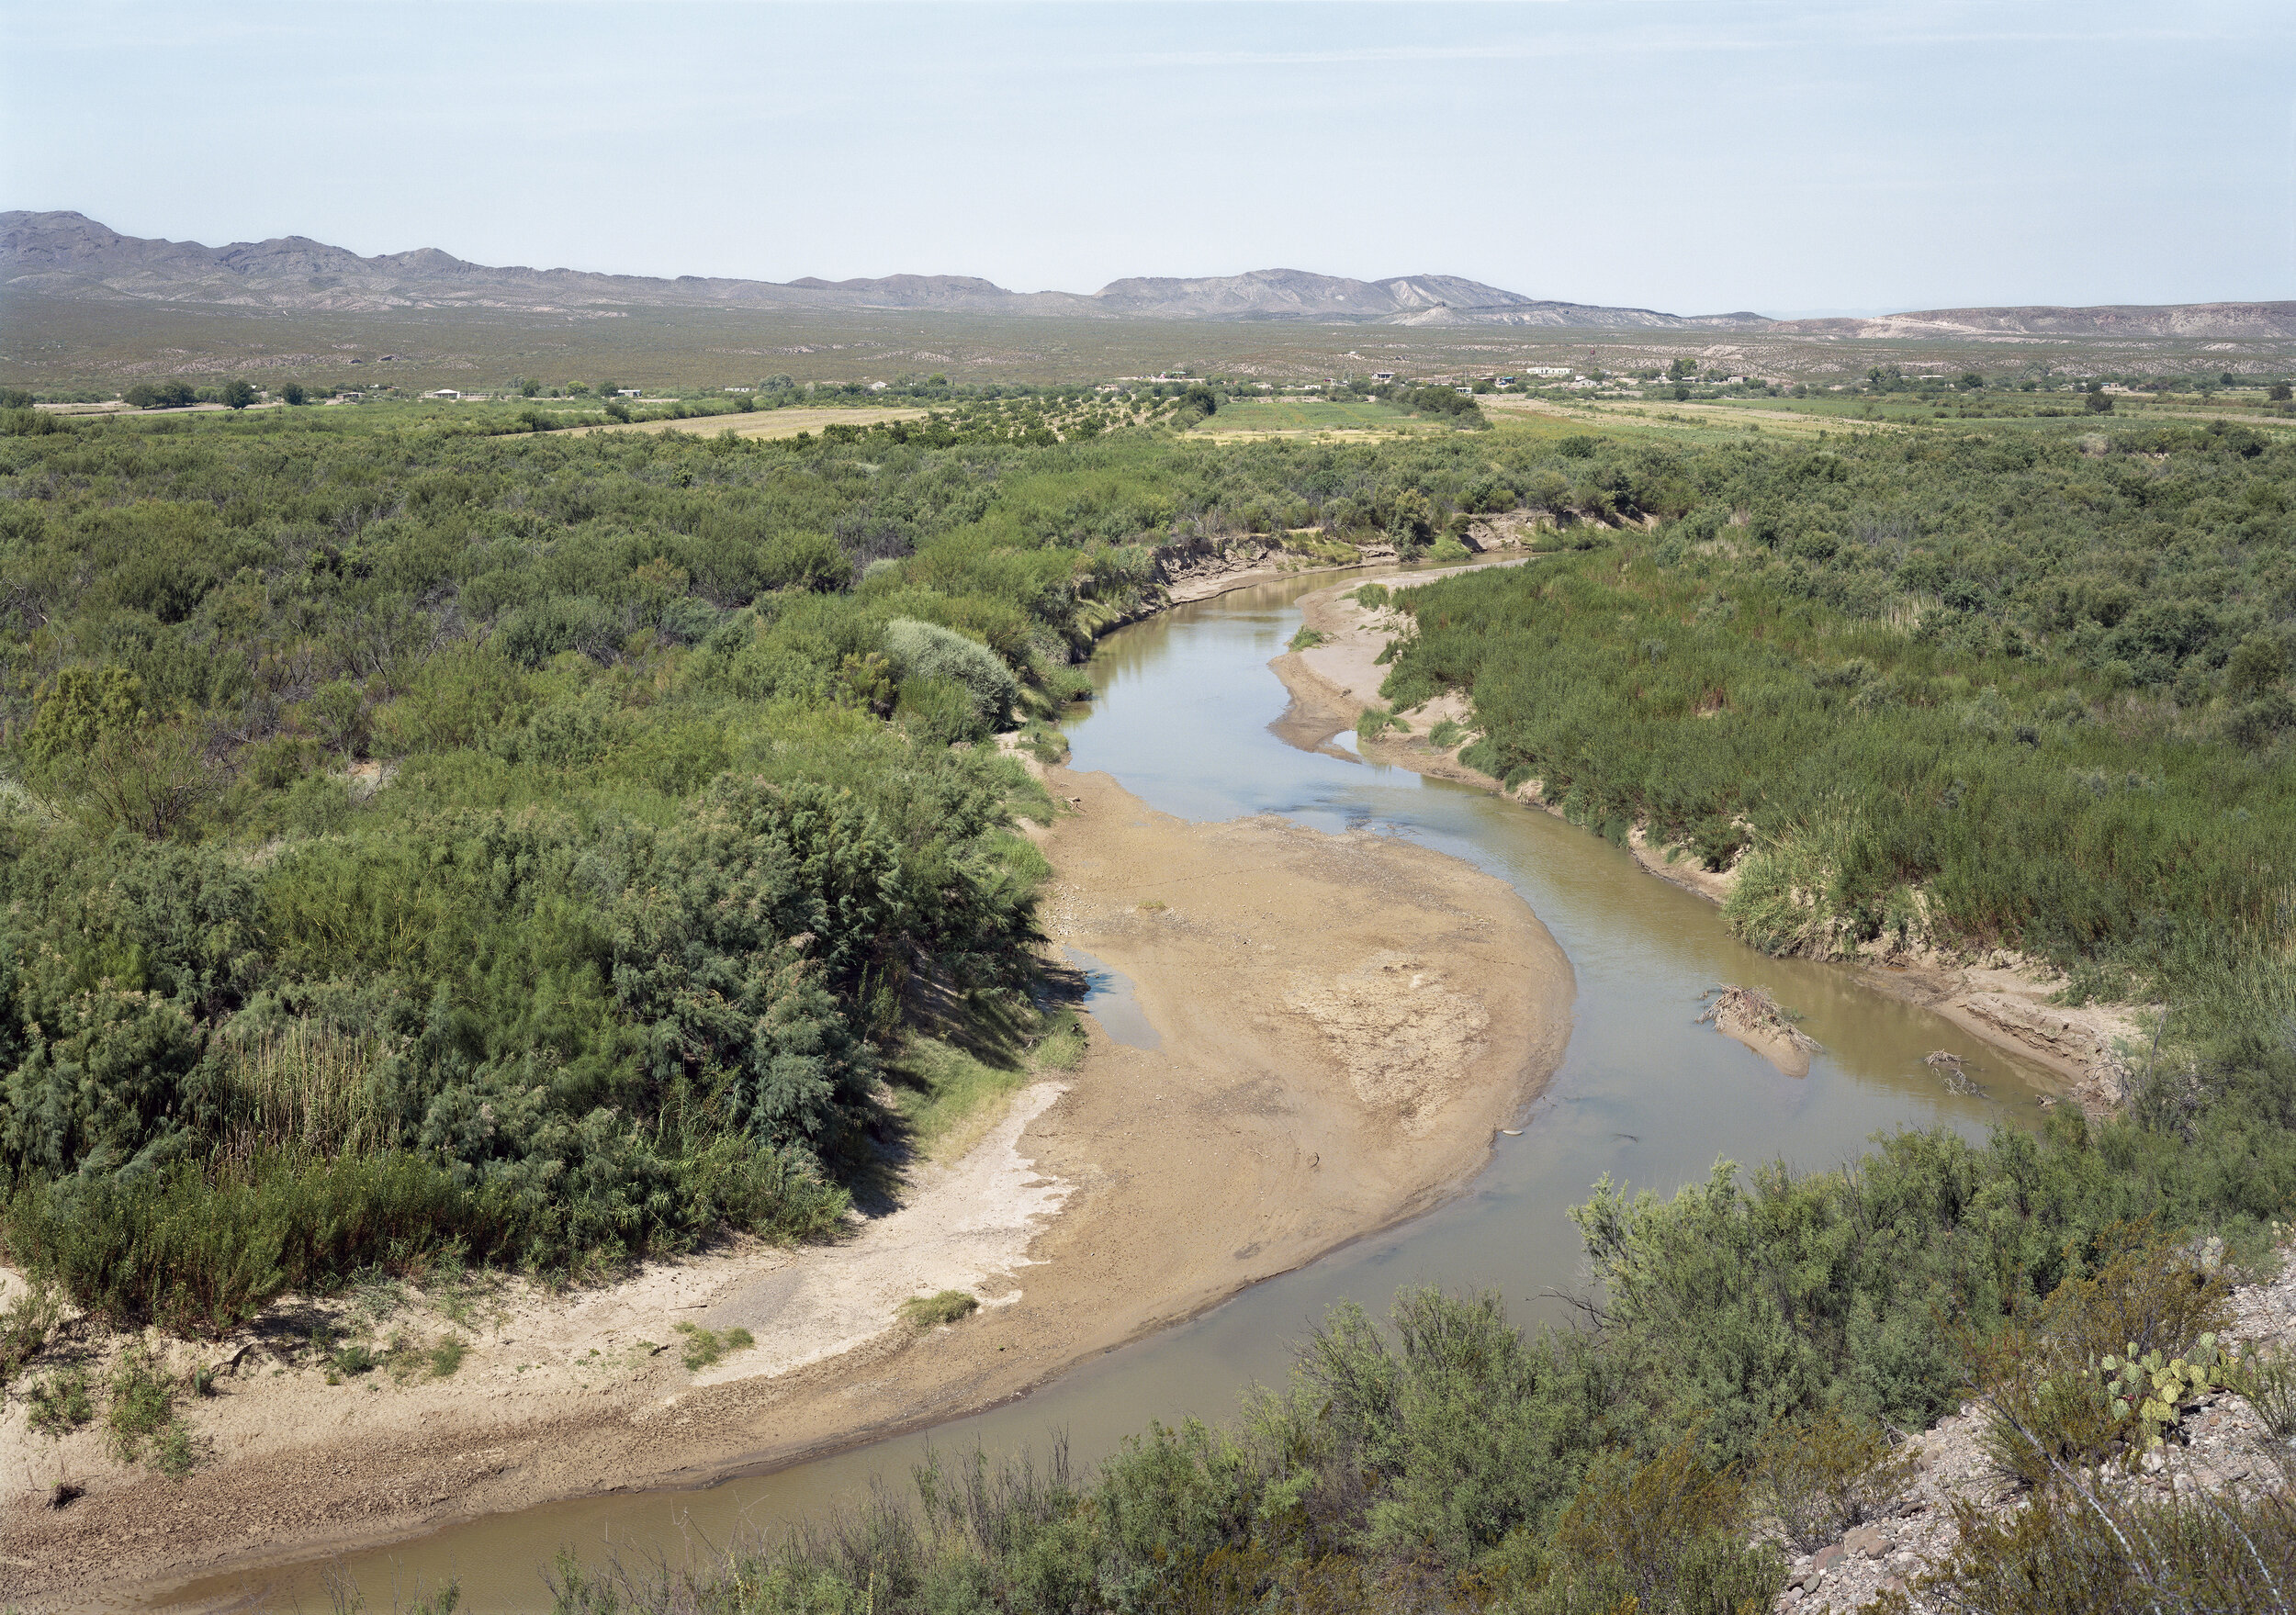 Farmland along the Rio Grande, US-Mexico Border, 2019